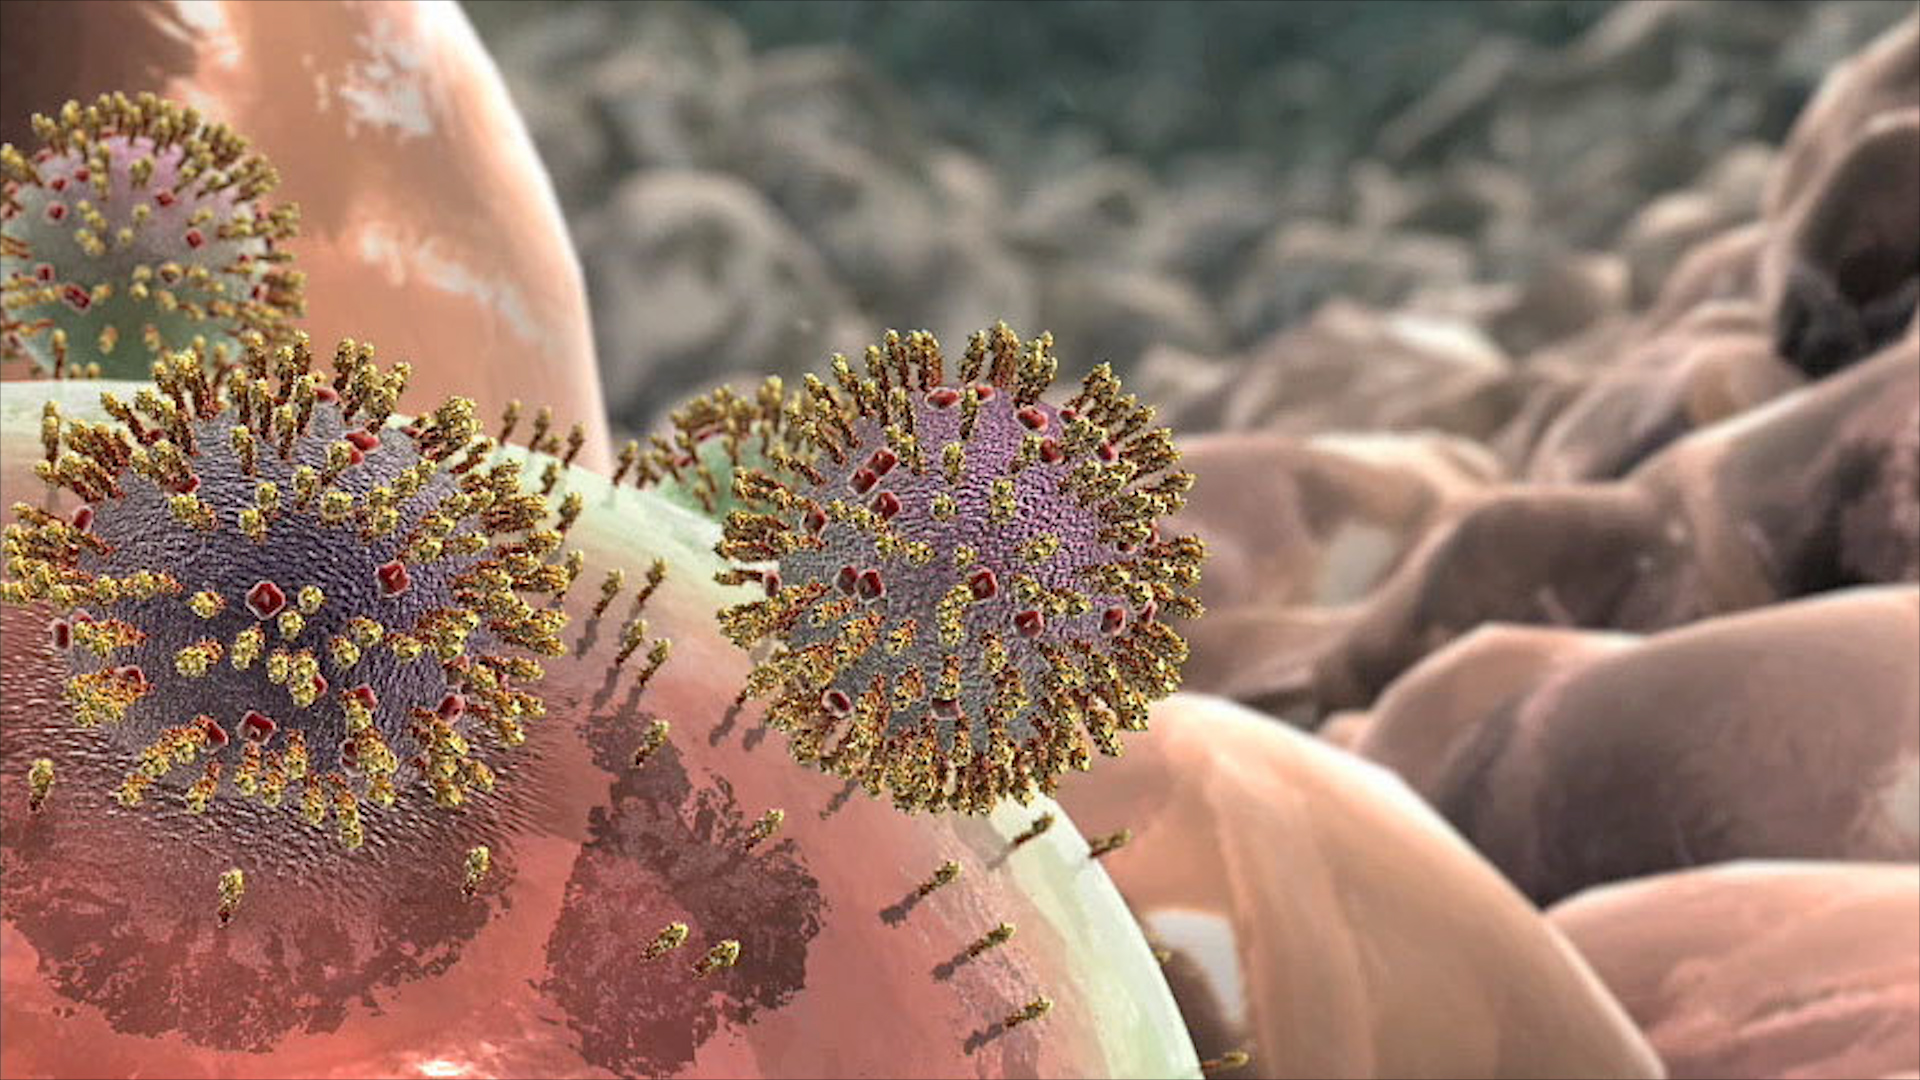 Скопление живых организмов. Вирус гриппа под микроскопом и коронавирус. Коронавирус штаммы. Вирус h1n1 испанка. Штаммы коронавируса под микроскопом.